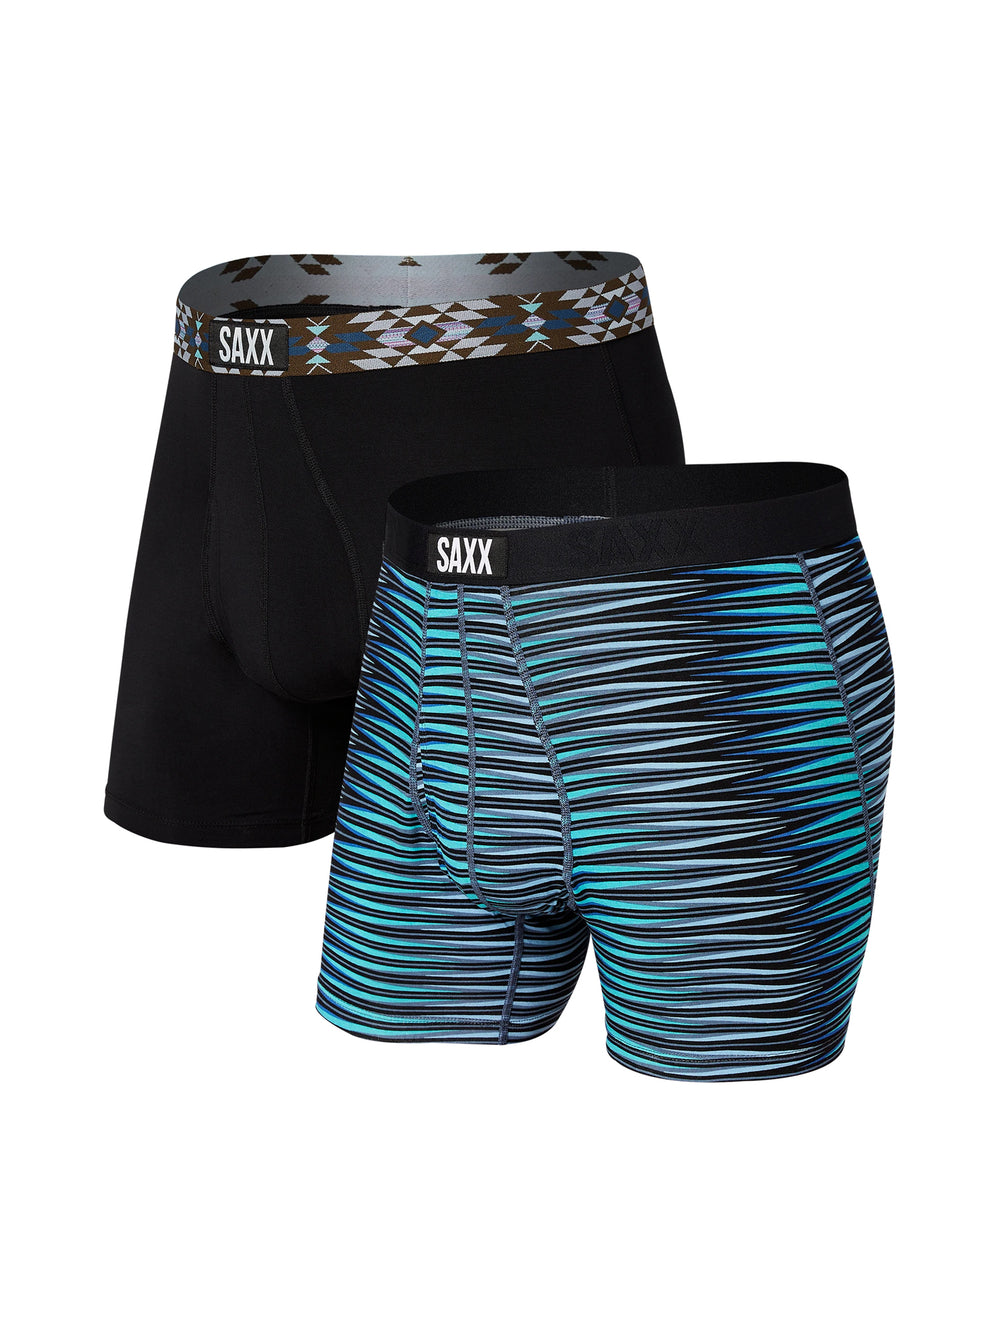 Saxx Men's Underwear - Daytripper Loose Boxers with Built-in